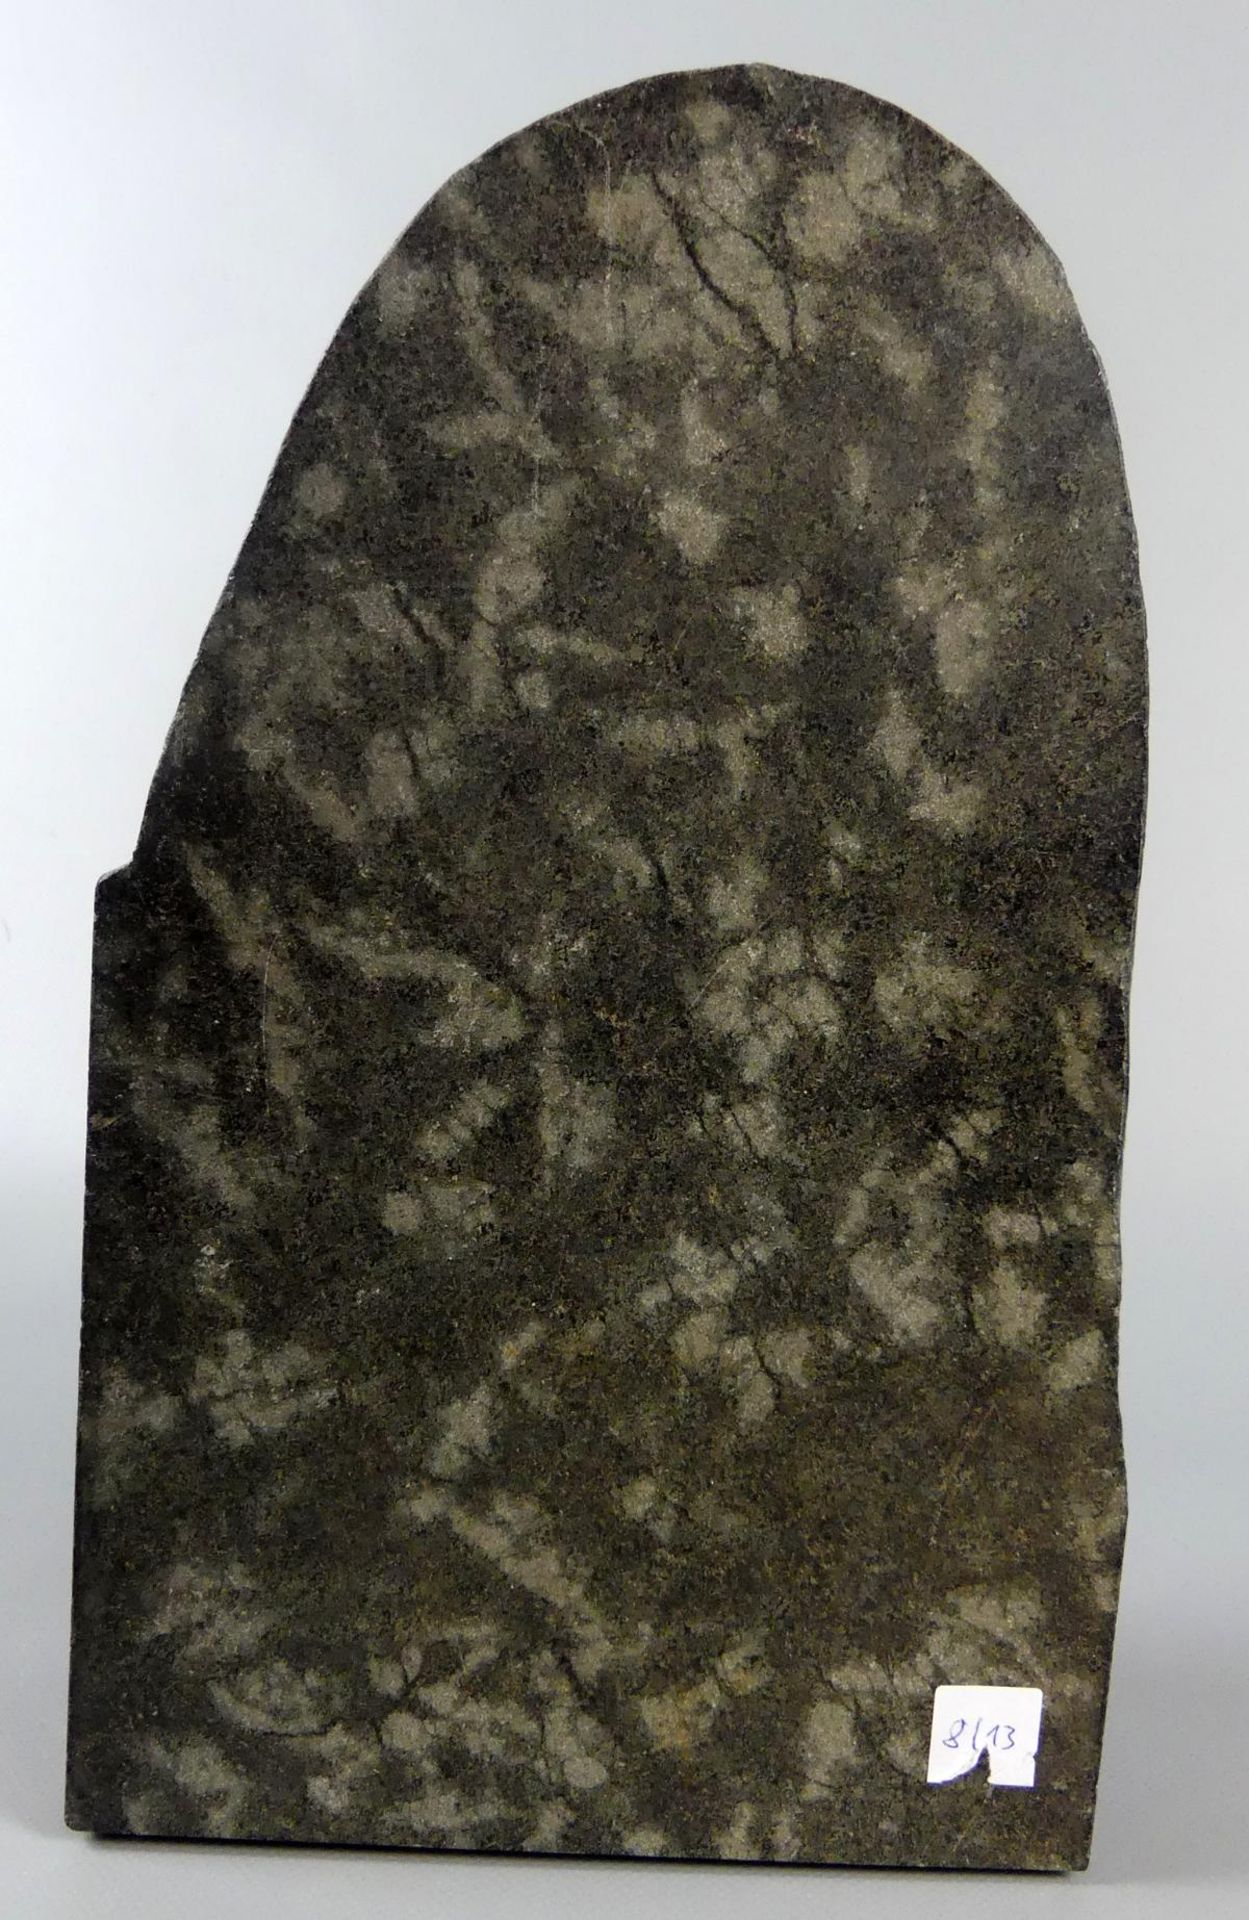 Skulptur, "Betende", unten monogr. HJK?, dat. 12.88, schwarzer Marmor, - Image 3 of 5